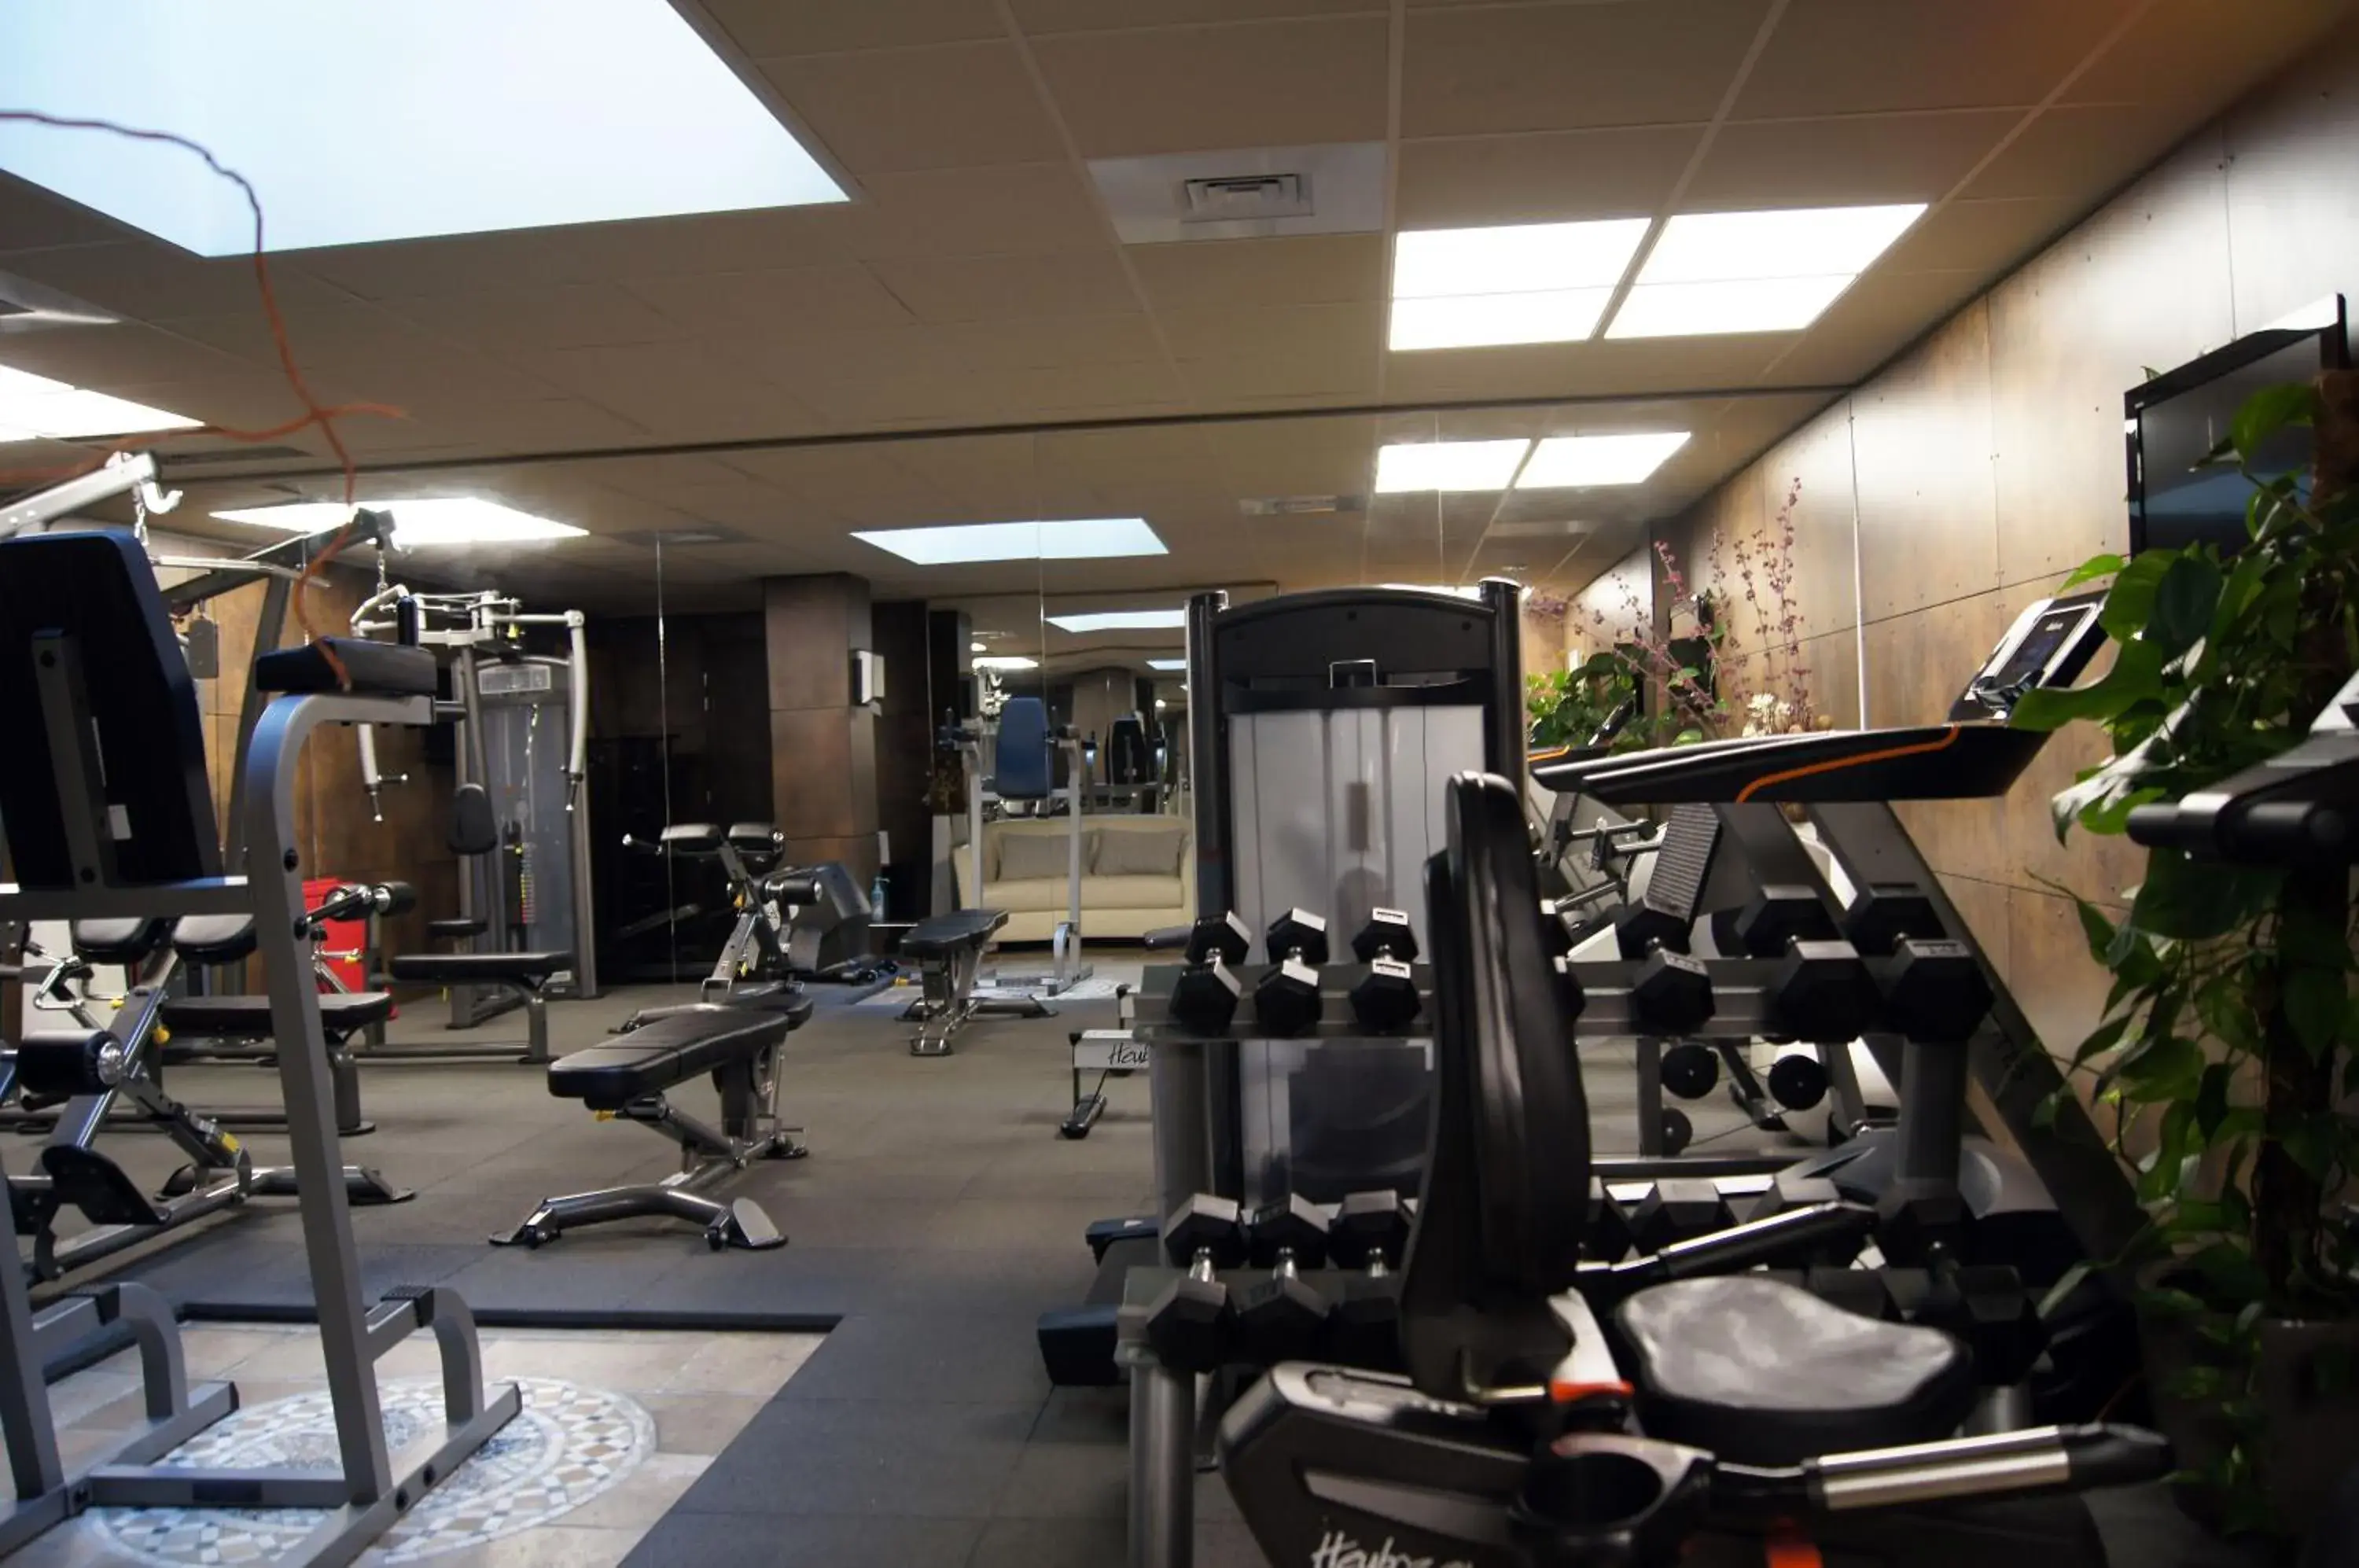 Fitness centre/facilities, Fitness Center/Facilities in La Villa Mazarin